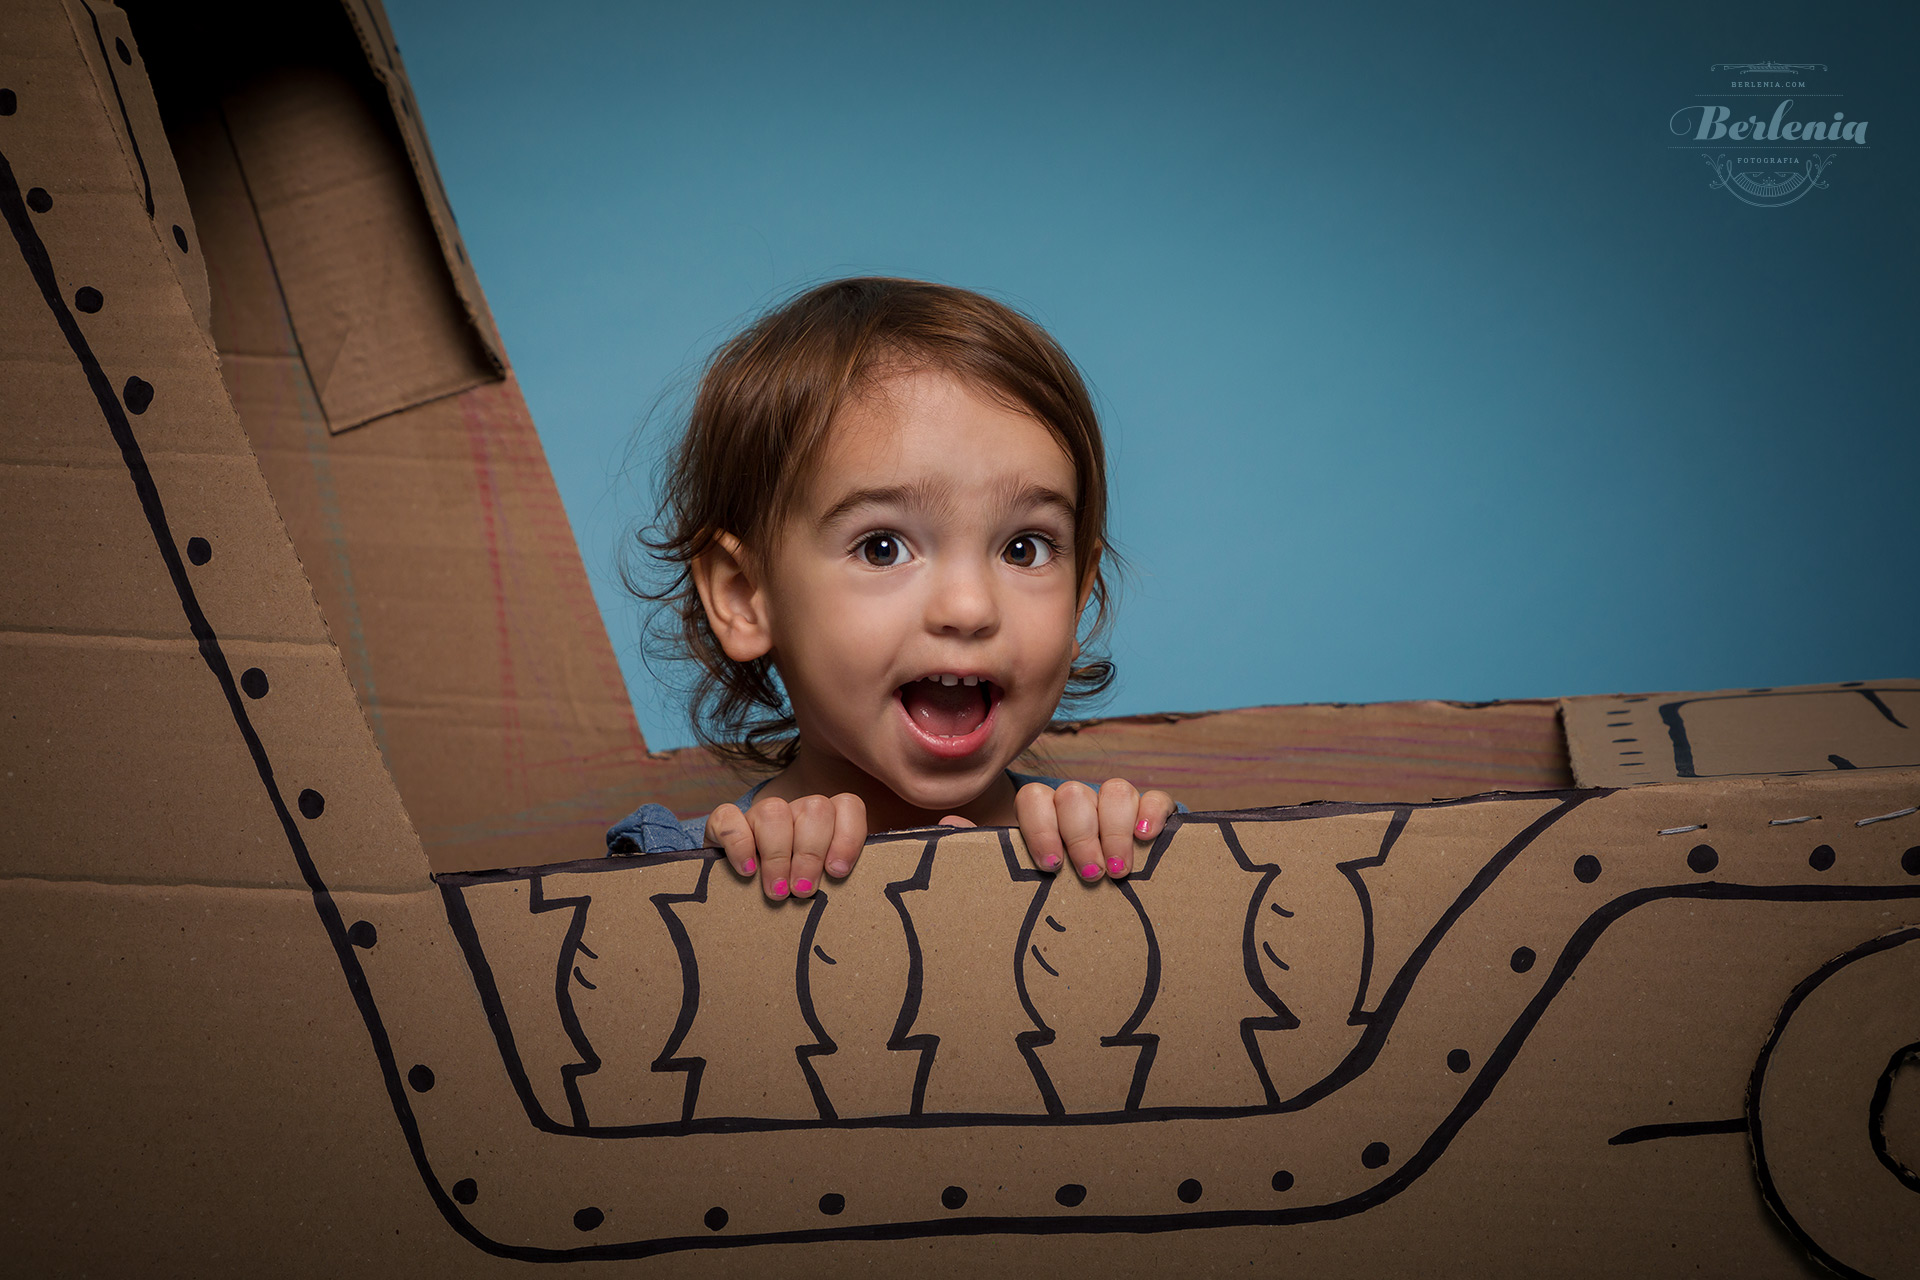 Sesión de fotos infantil con barco de cartón - cardboard pirate ship - Villa Urquiza, CABA, Buenos Aires, Argentina - Berlenia Fotografía - 02